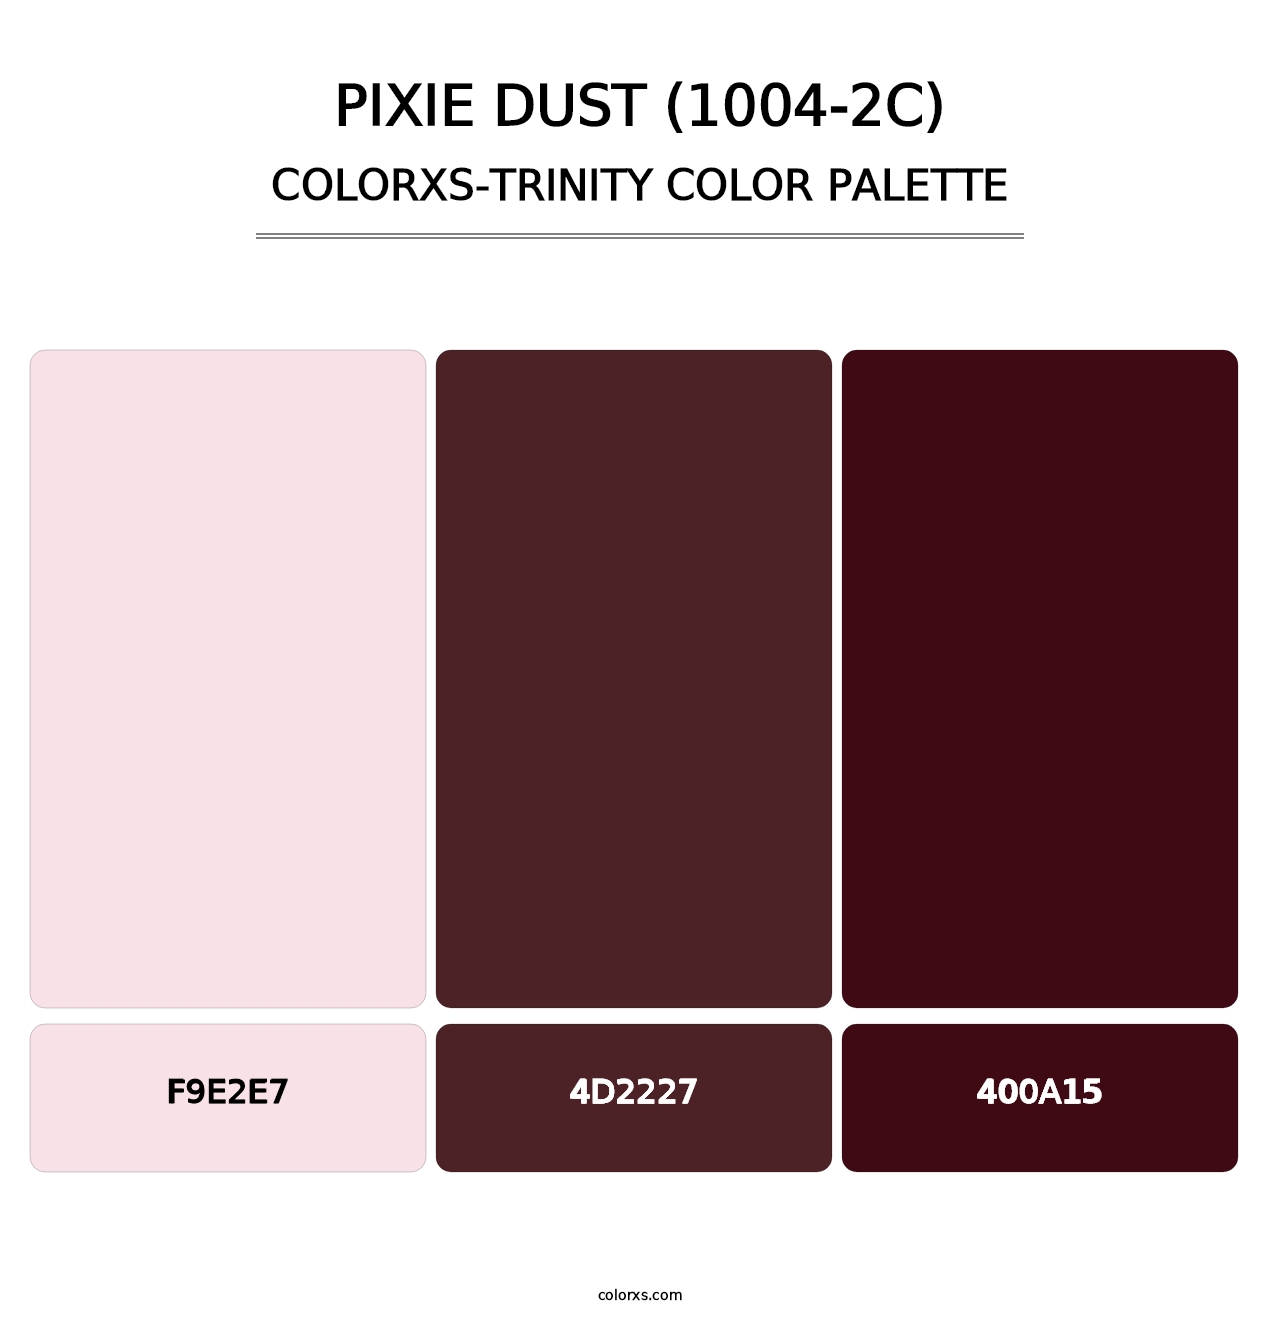 Pixie Dust (1004-2C) - Colorxs Trinity Palette